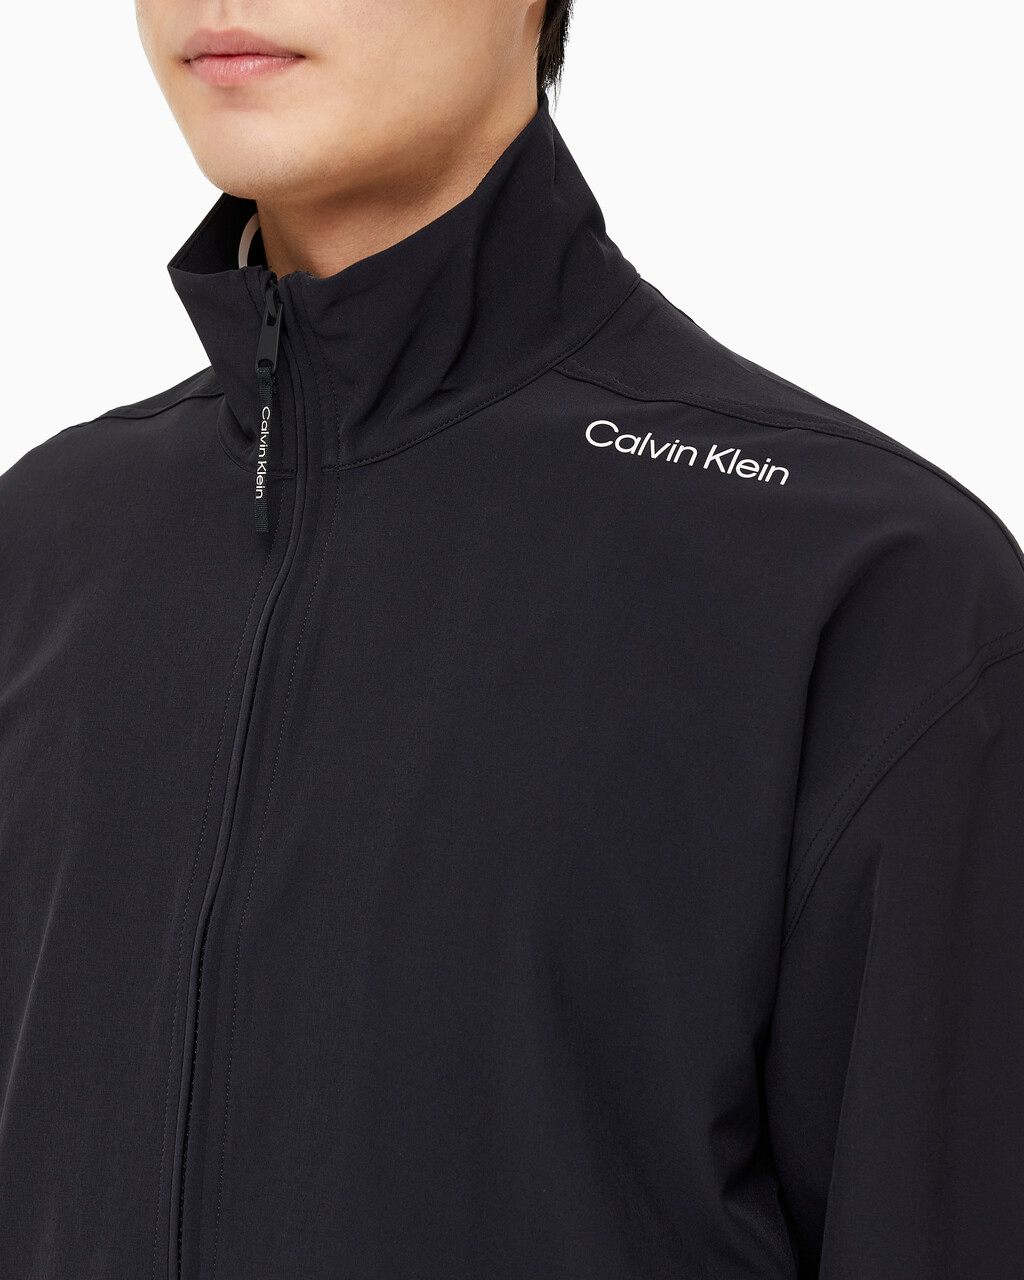 Buy 남성 리플렉티브 로고 레귤러 핏 윈드 재킷 in color BLACK